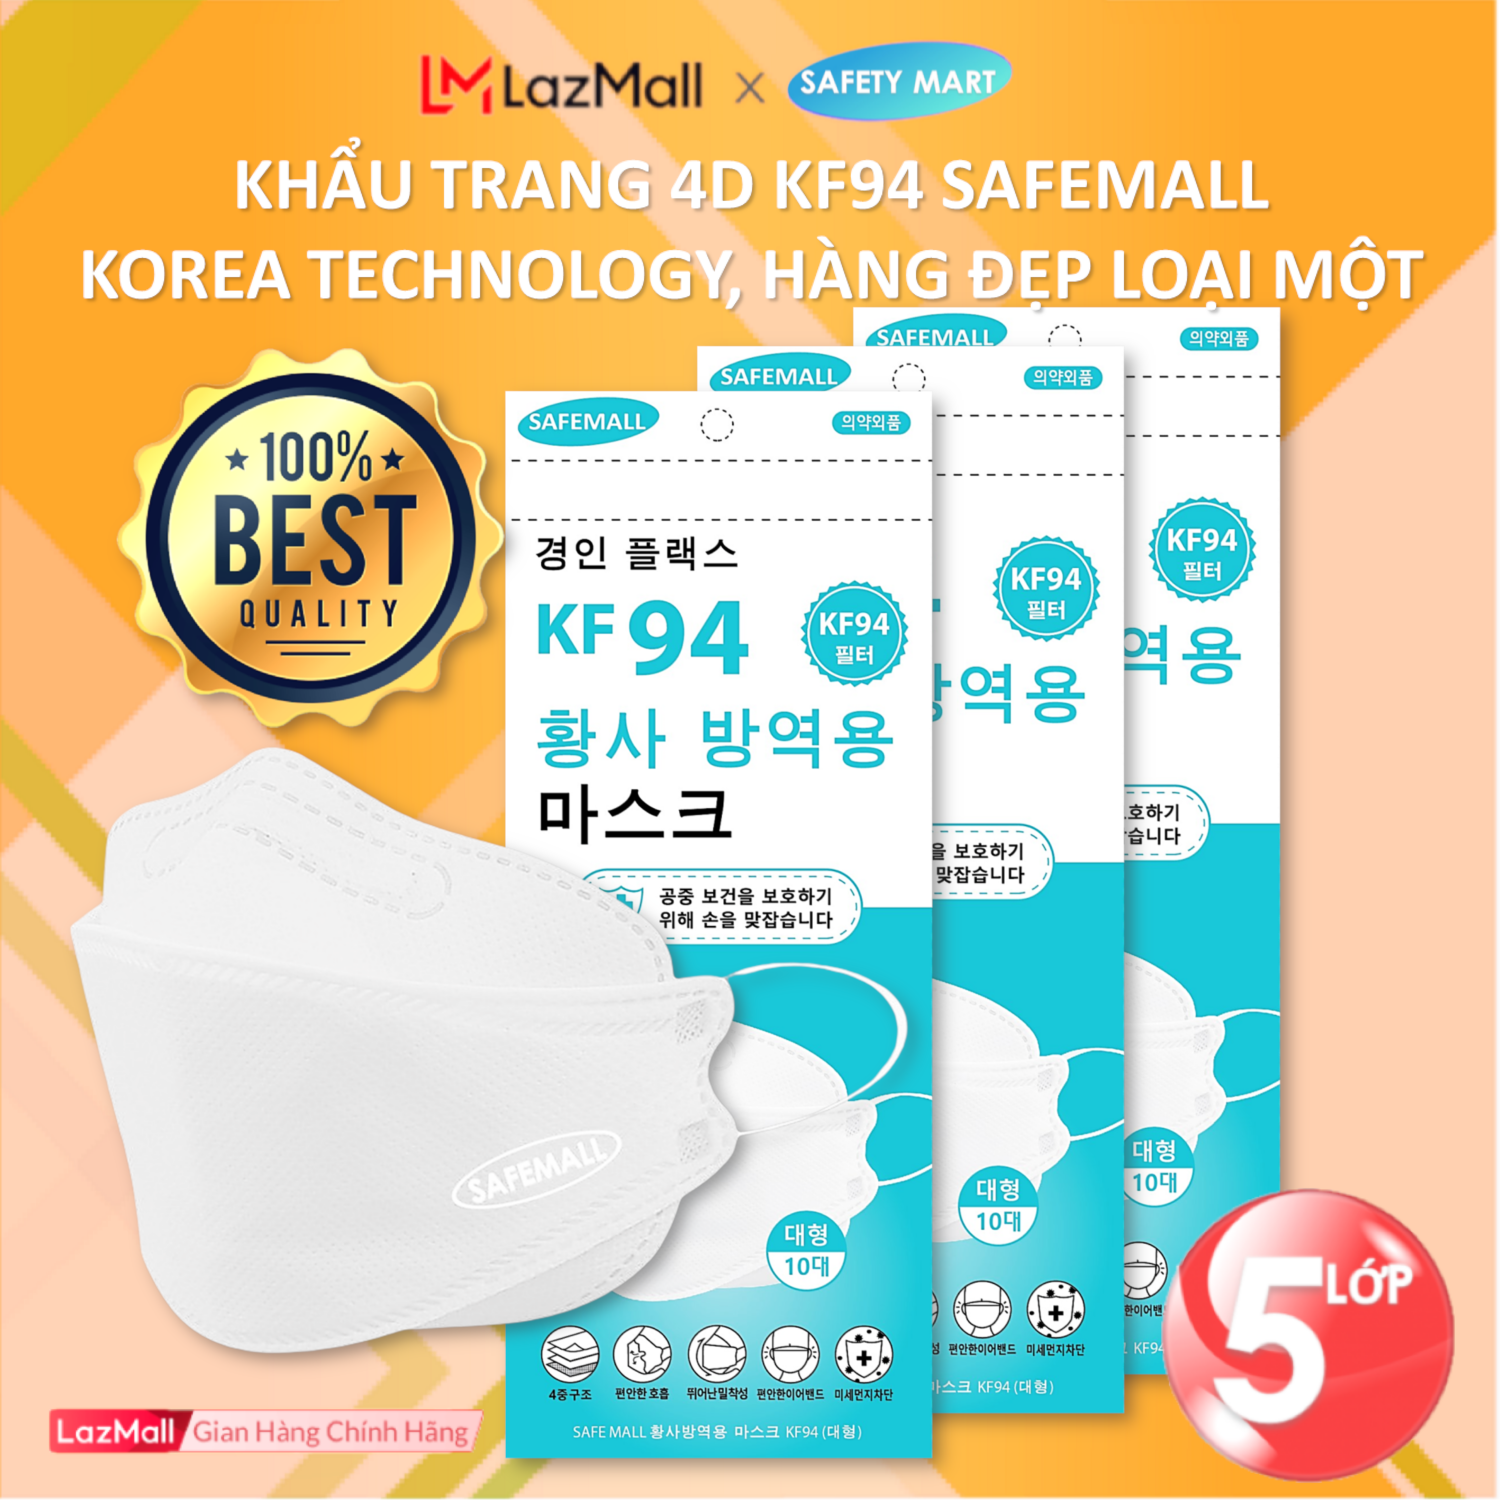 [HOT] Thùng 300/200 chiếc Khẩu trang y tế 4D KF94 SafeMall Korea Technology, 5 lớp vải kháng khuẩn, kháng bụi mịn lên đến 99%, Khẩu trang dày đẹp loại - Hàng Chính Hãng Safety Mart Official